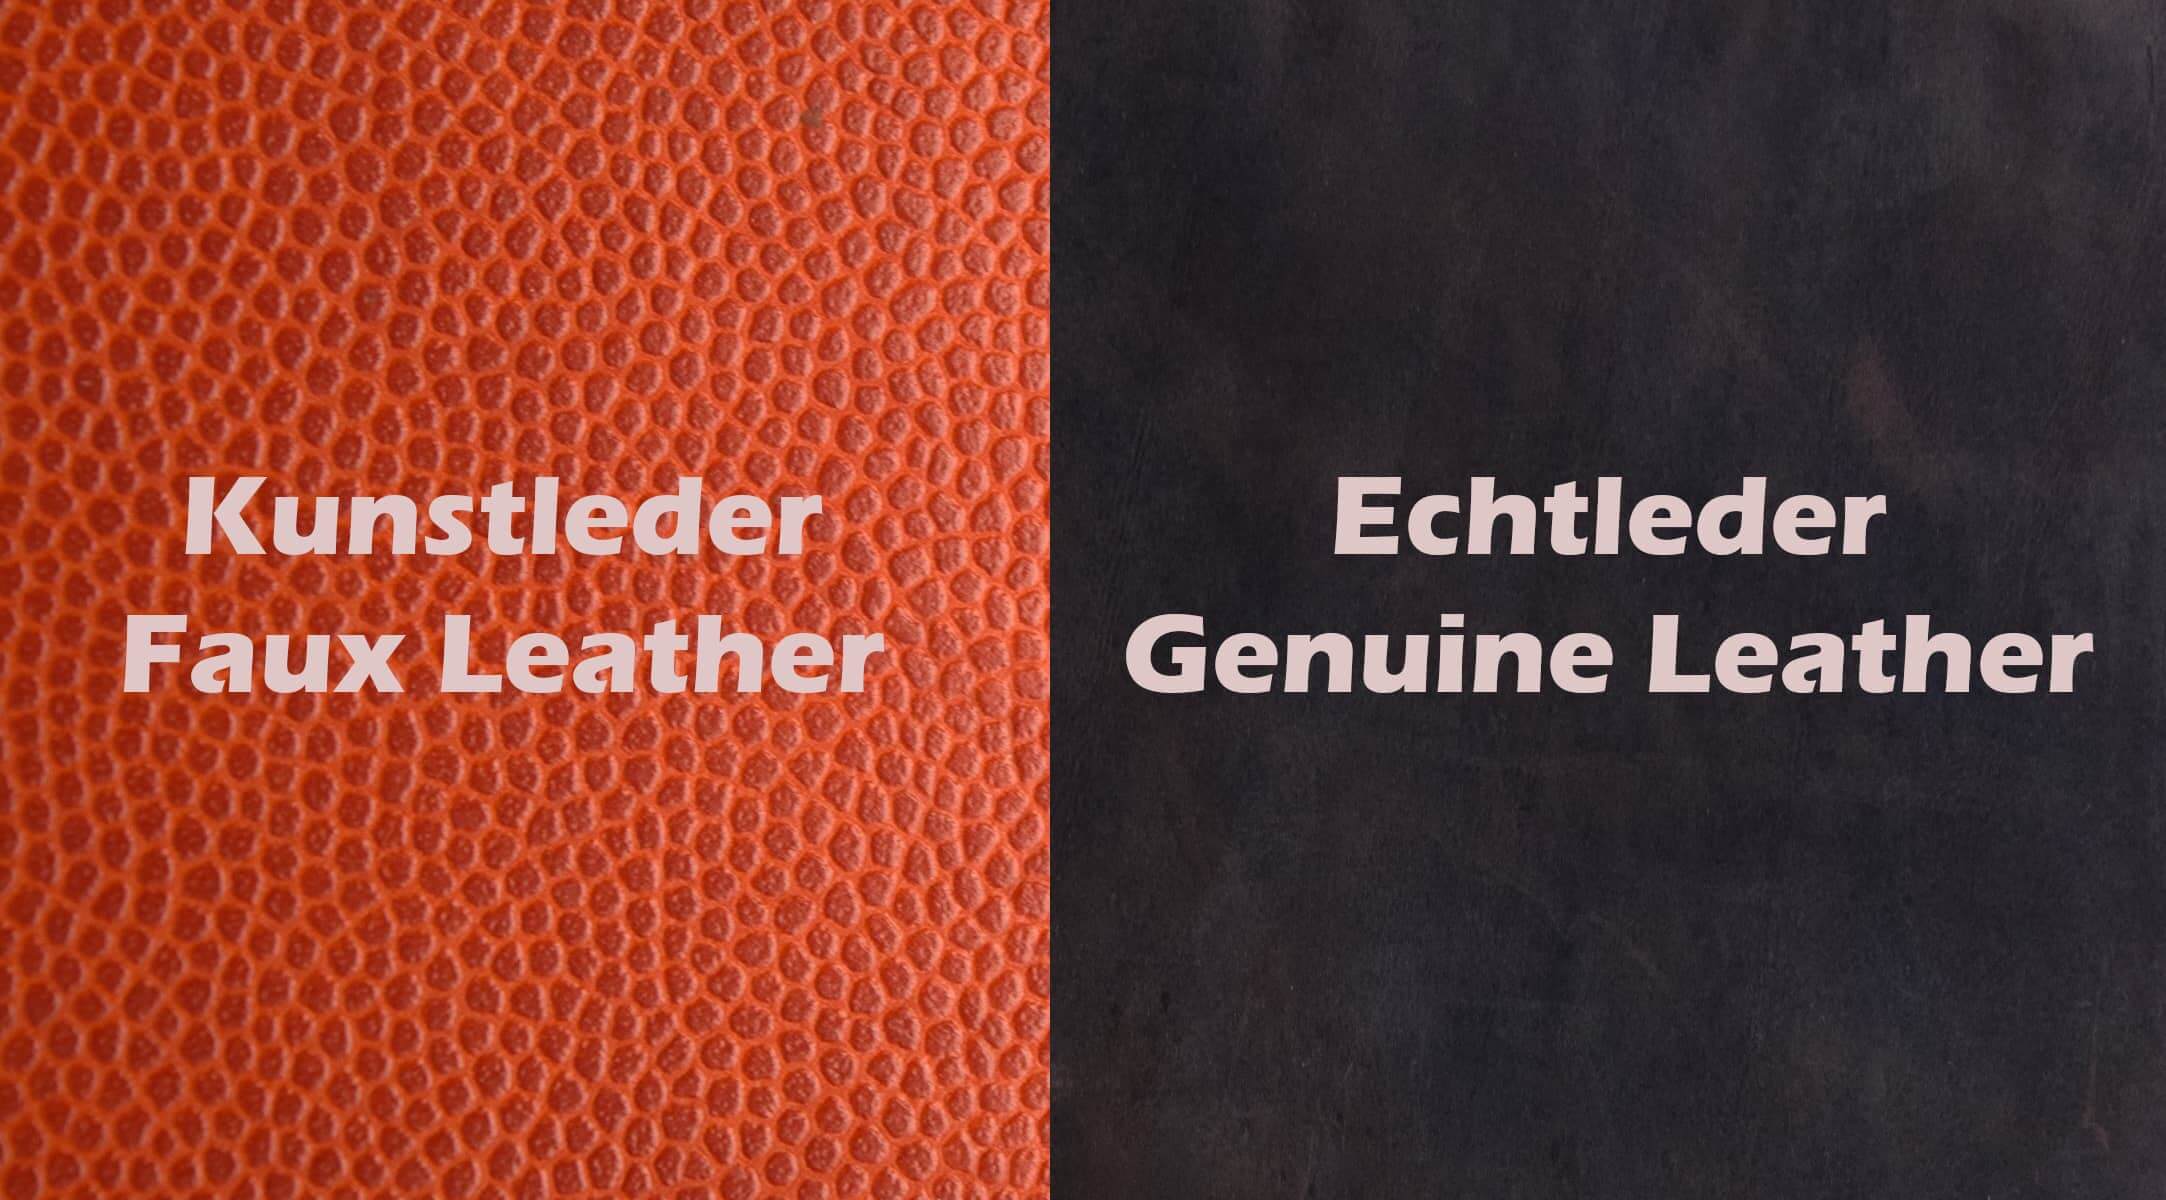 echtleder vs kunstleder - real leather vs faux leather